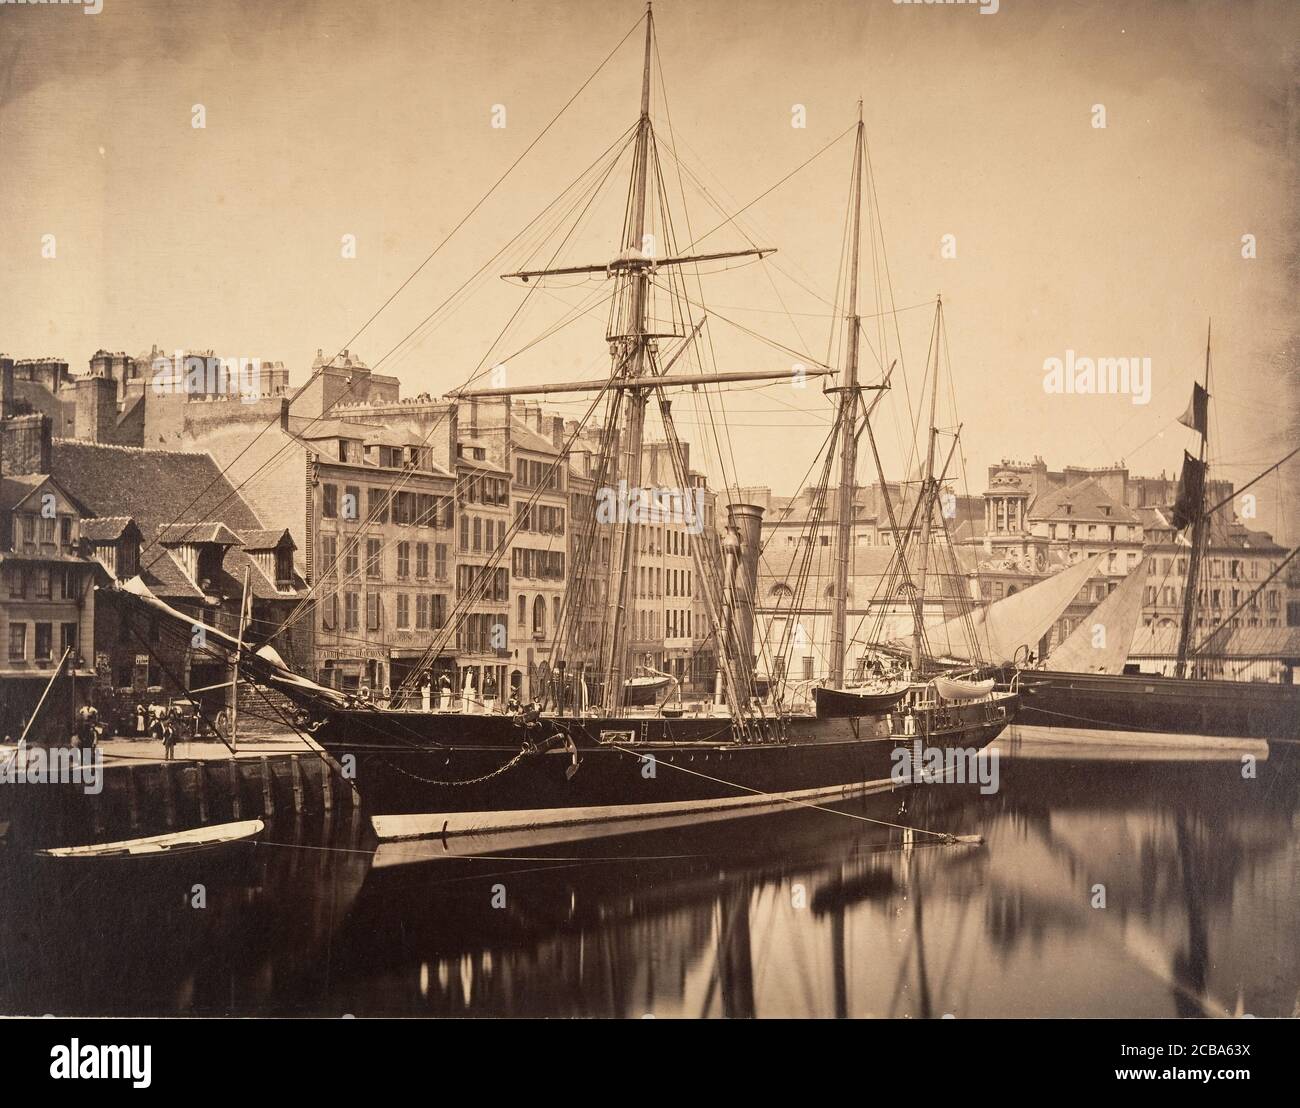 La Reine Hortense - Yacht de l'empereur, Havre, 1856. Stock Photo